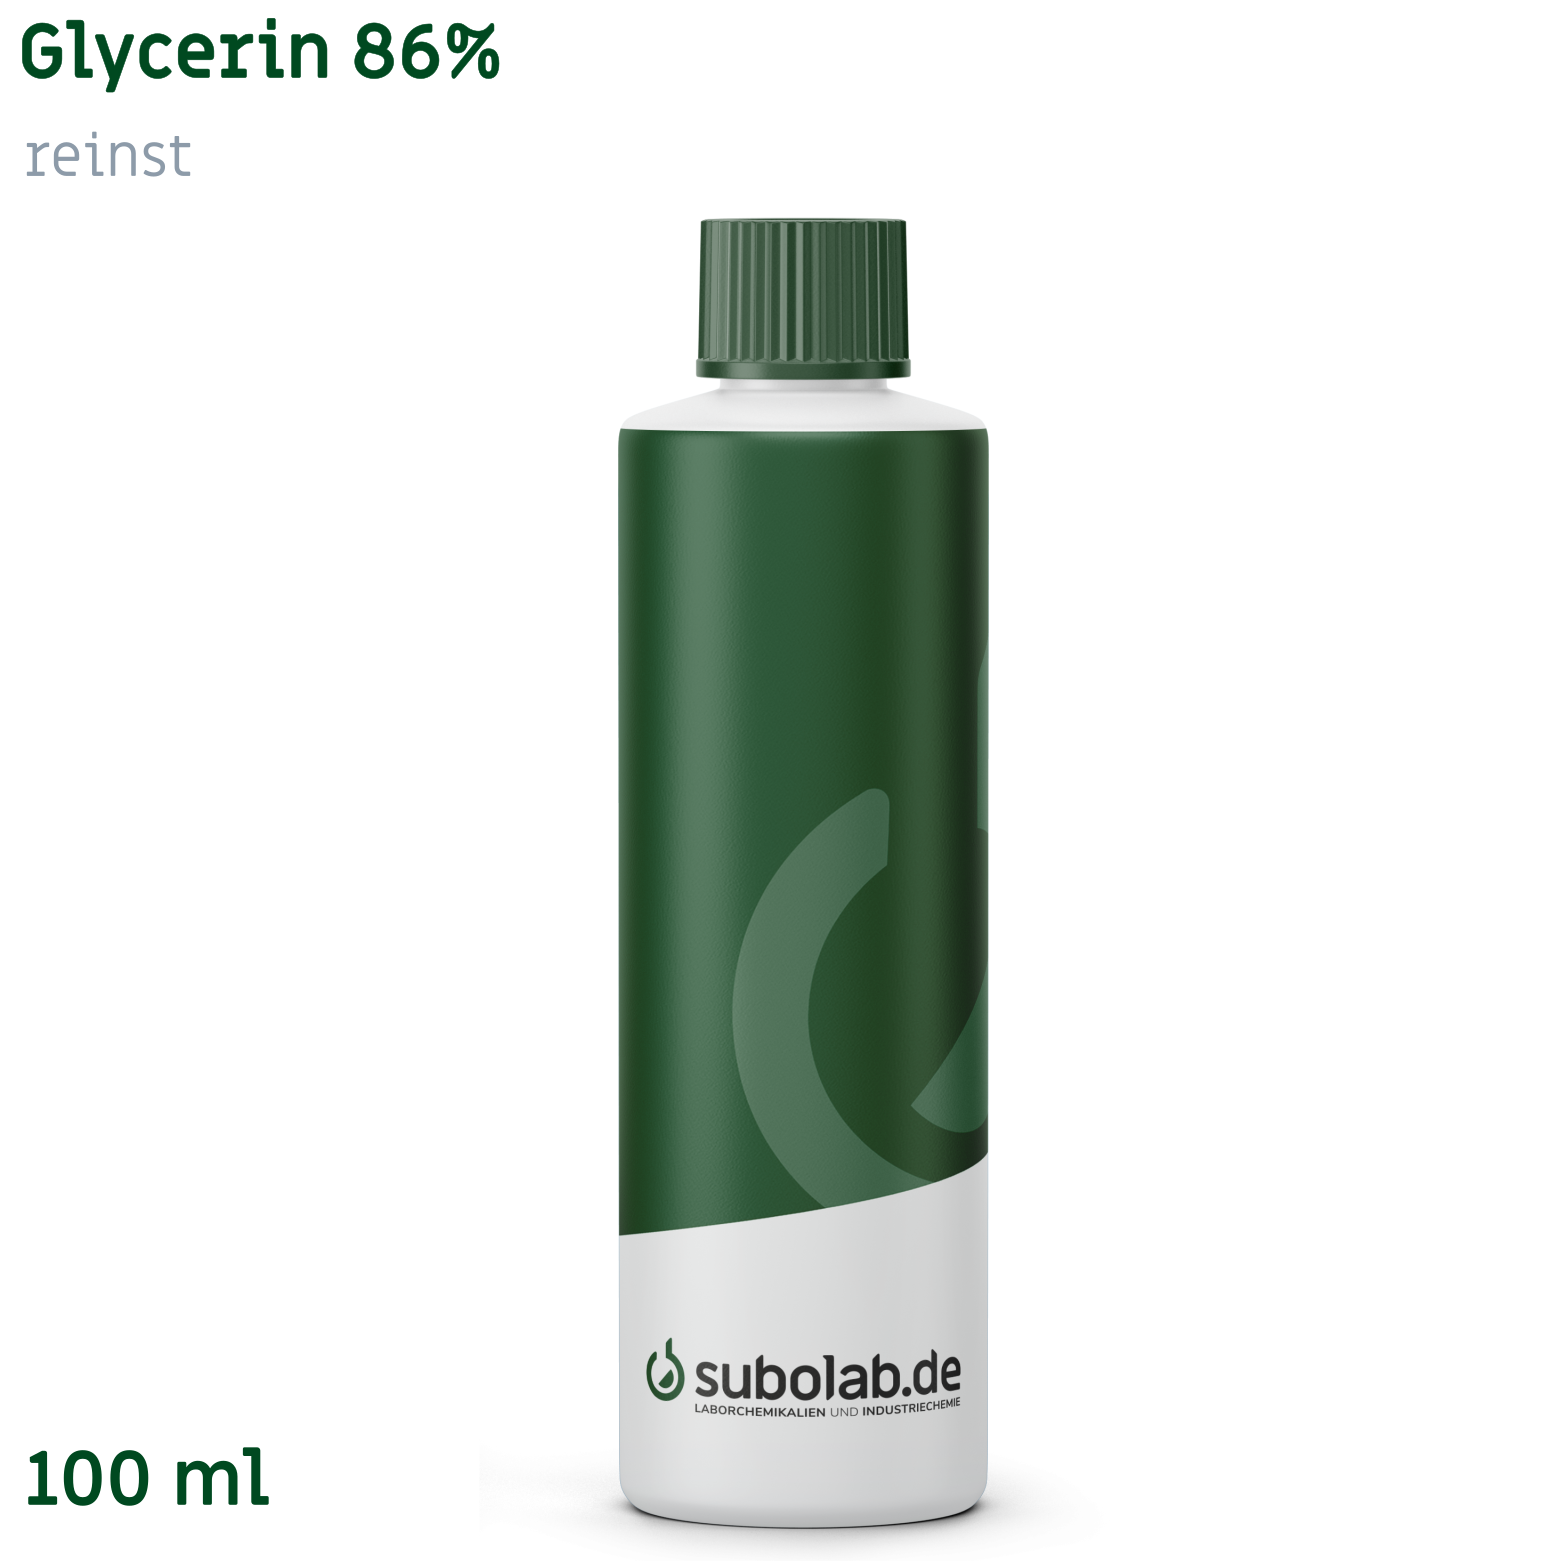 Bild von Glycerin 86% reinst (100 ml)